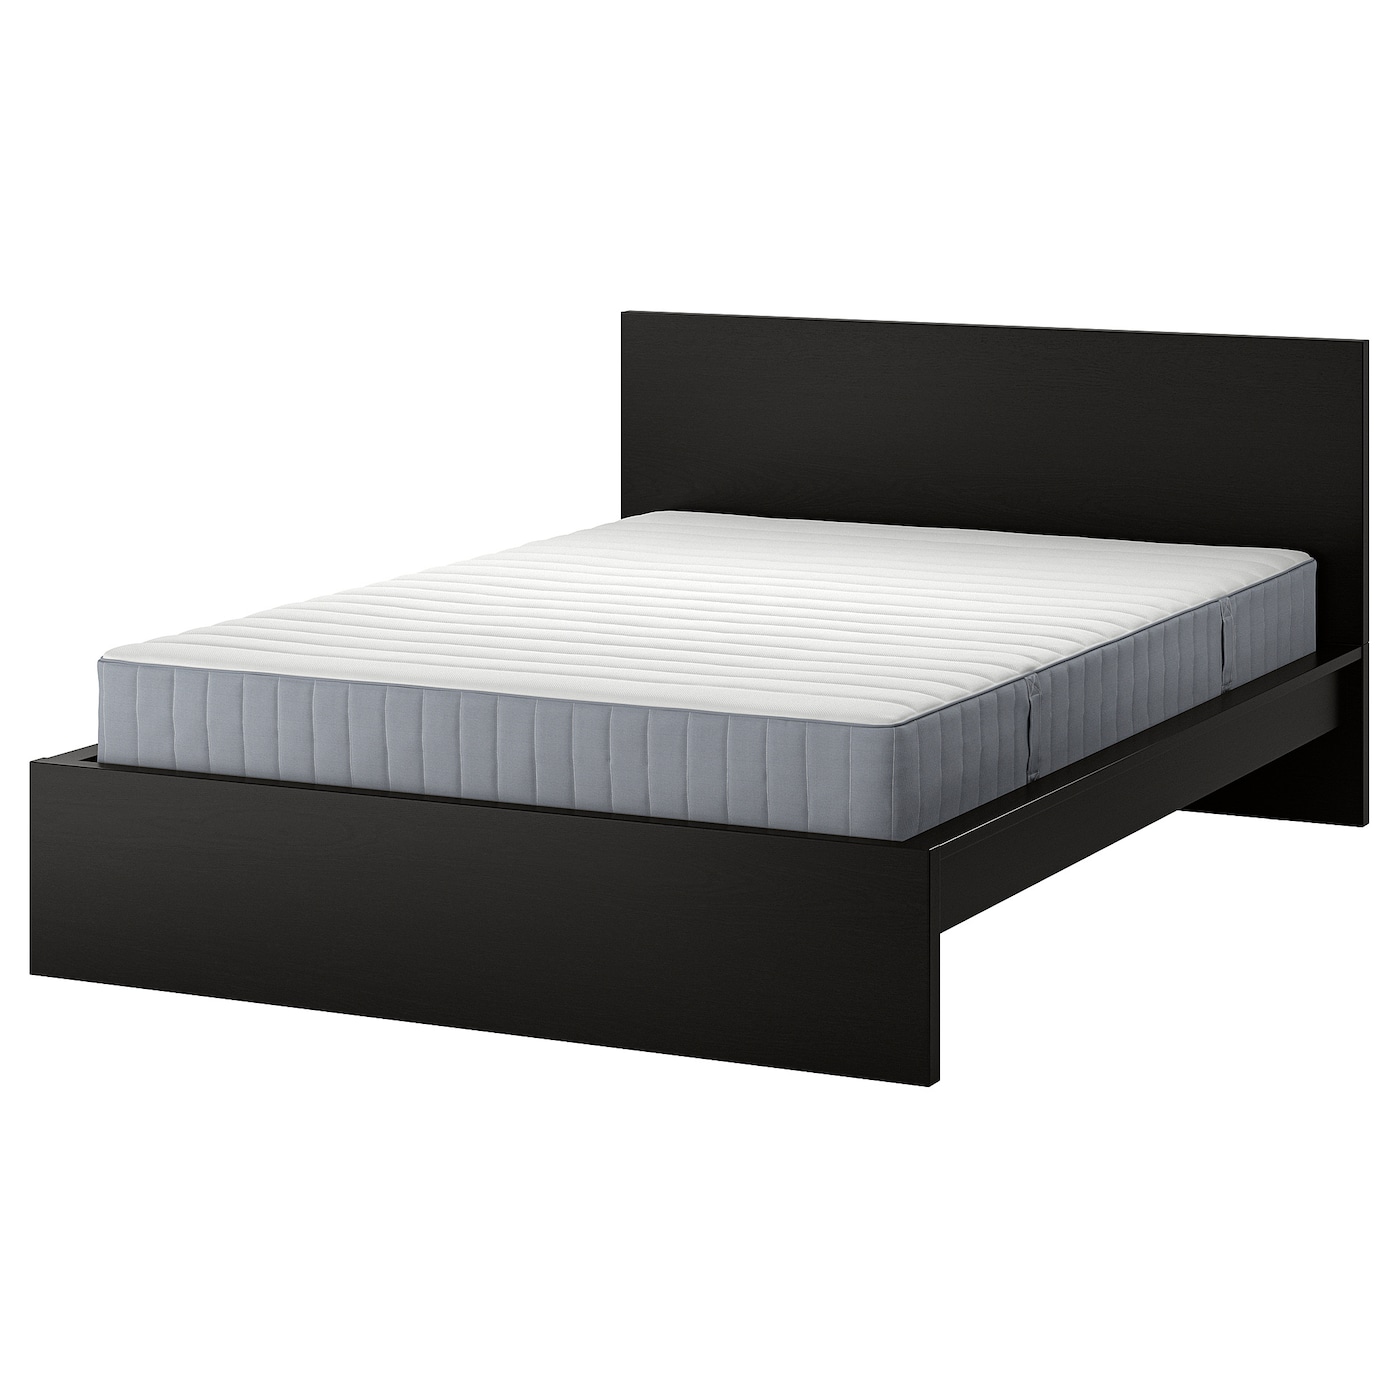 Кровать - IKEA MALM, 200х140 см, матрас средне-жесткий, черно-коричневый, МАЛЬМ ИКЕА